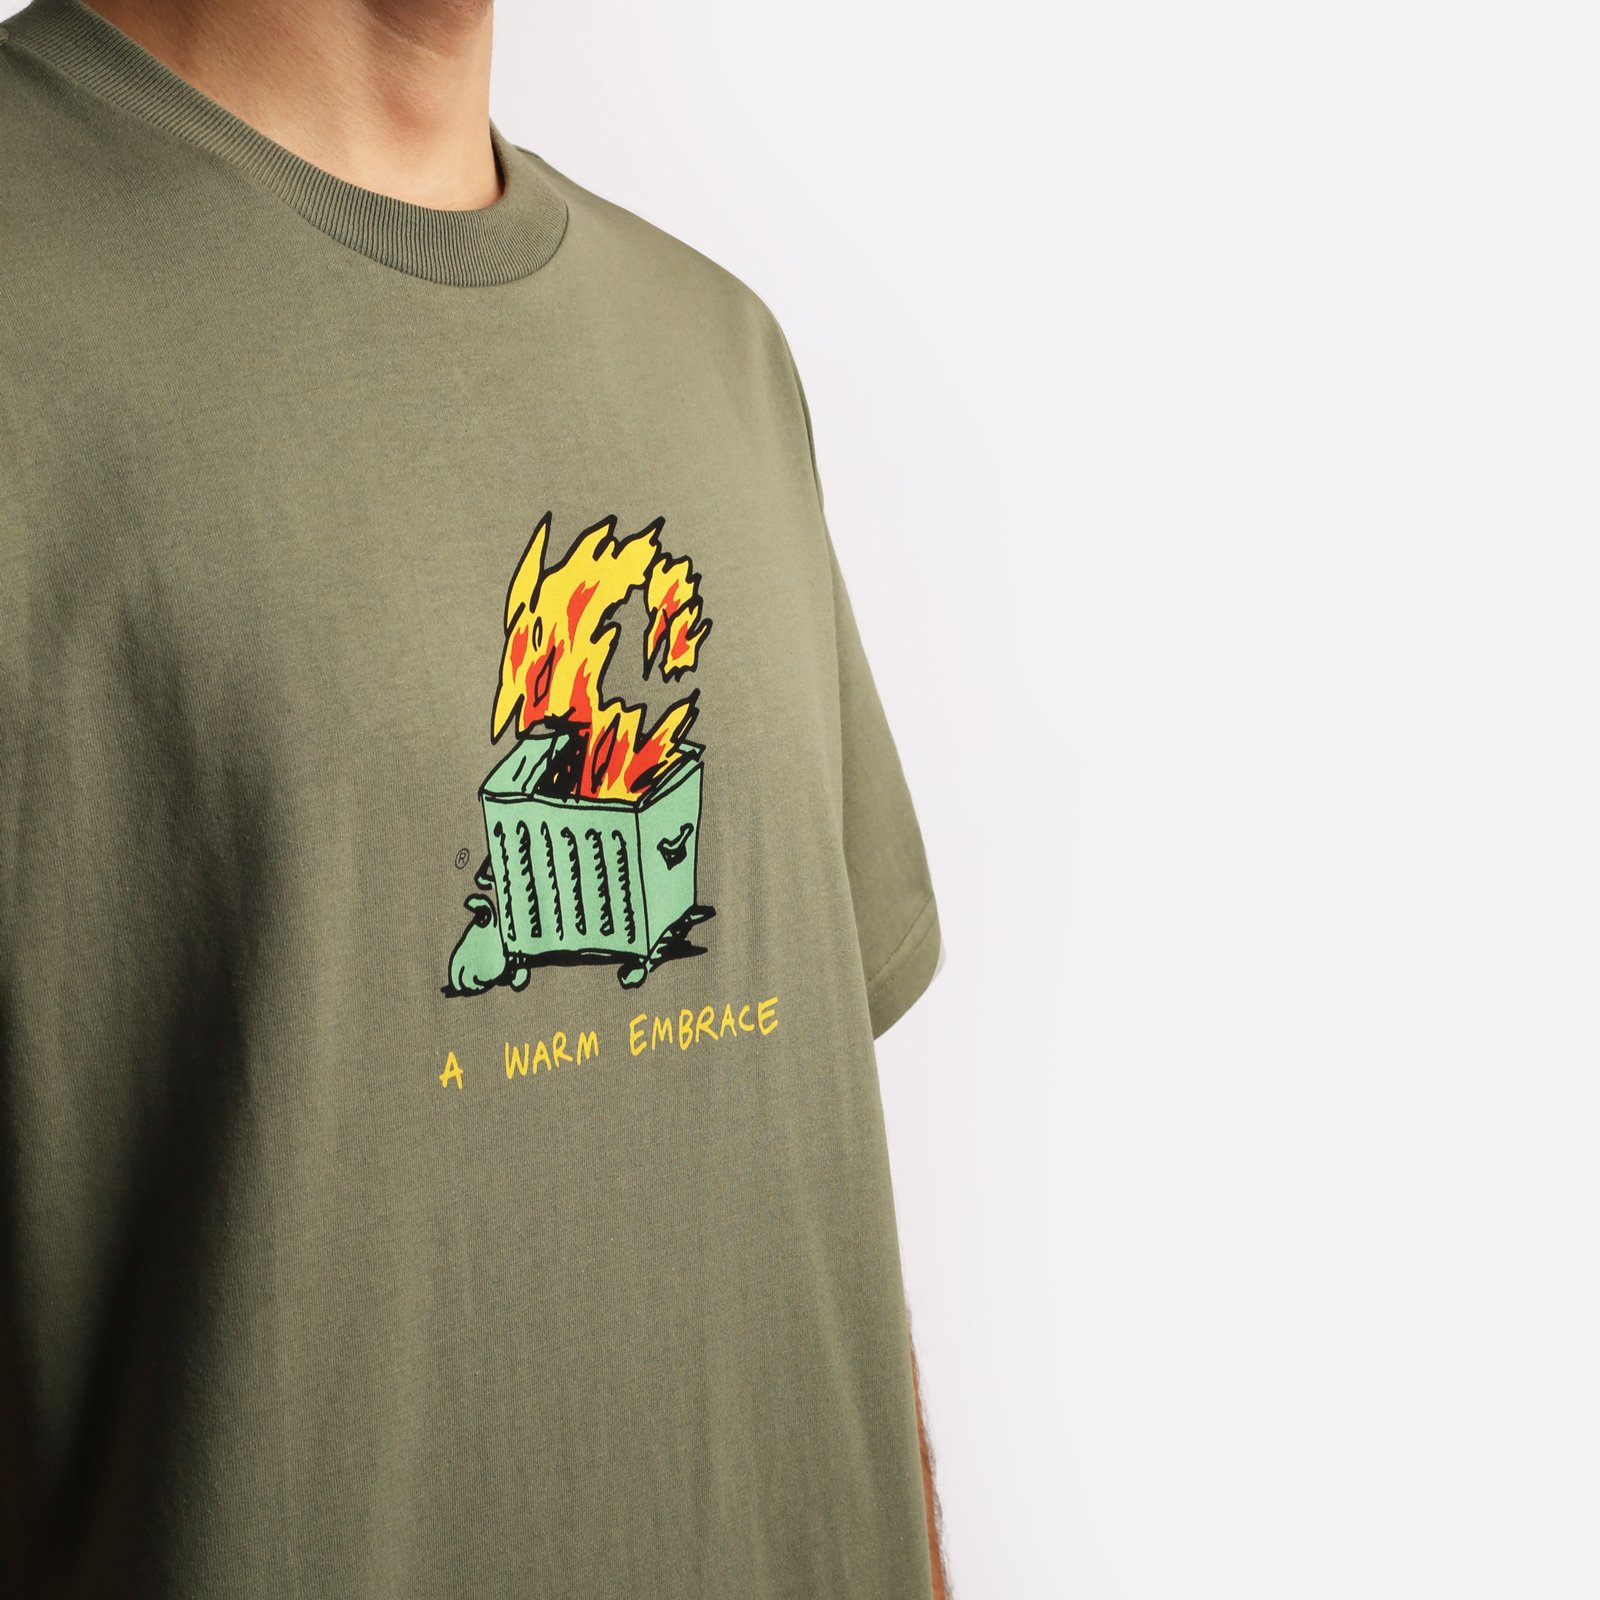 мужская зеленая футболка Carhartt WIP S/S Warm Embrace T-Shirt I032390-green - цена, описание, фото 4